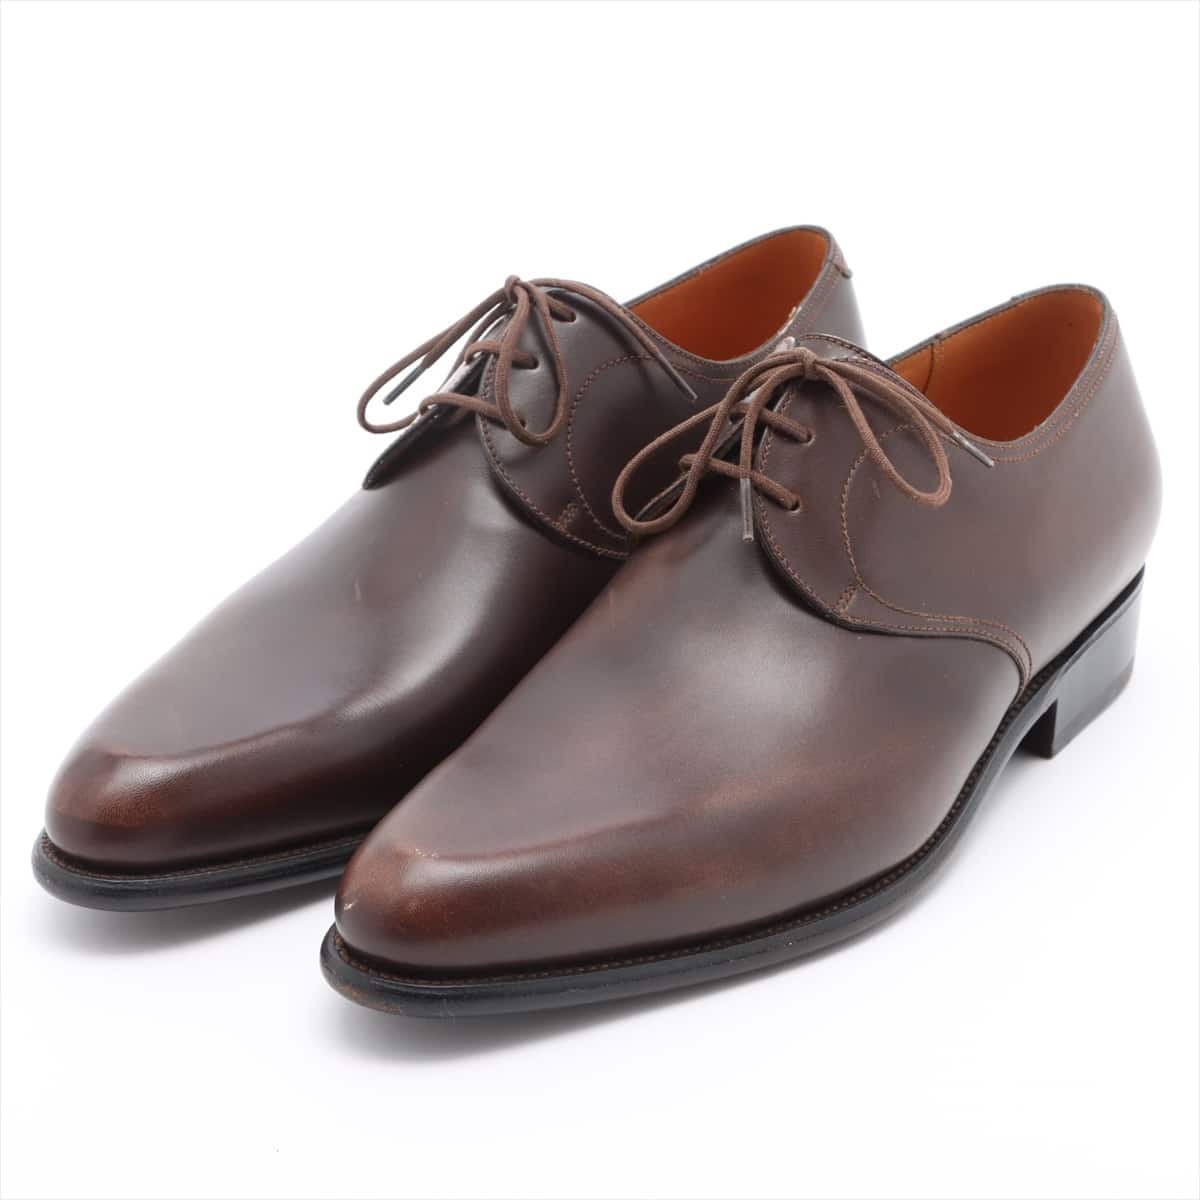 J. M. Weston Leather Dress shoes 7D Men's Brown 449